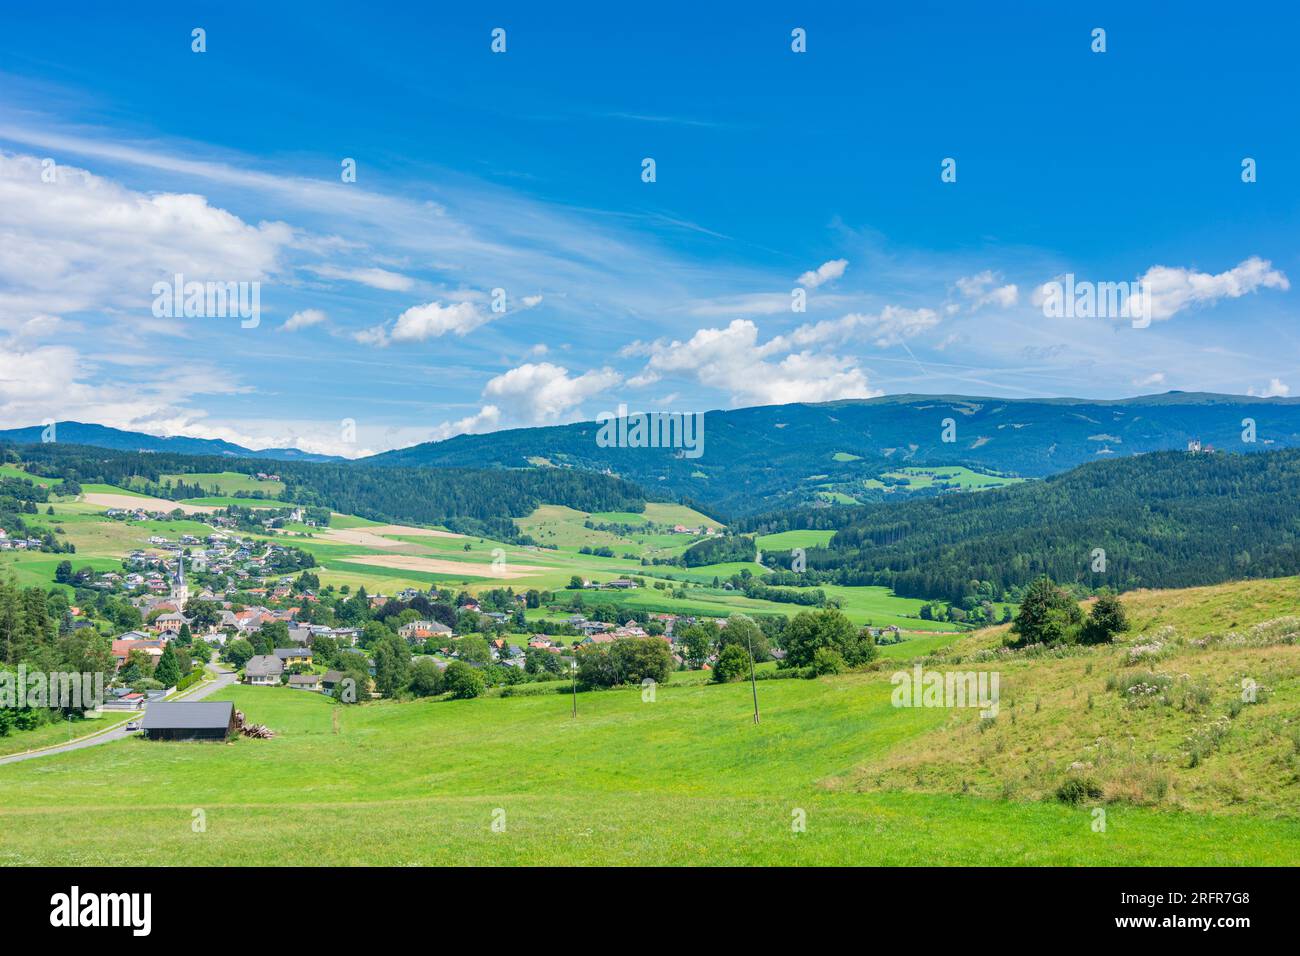 Guttaring: village Guttaring, mountain Seetaler Alpen in Mittelkärnten, Kärnten, Carinthia, Austria Stock Photo